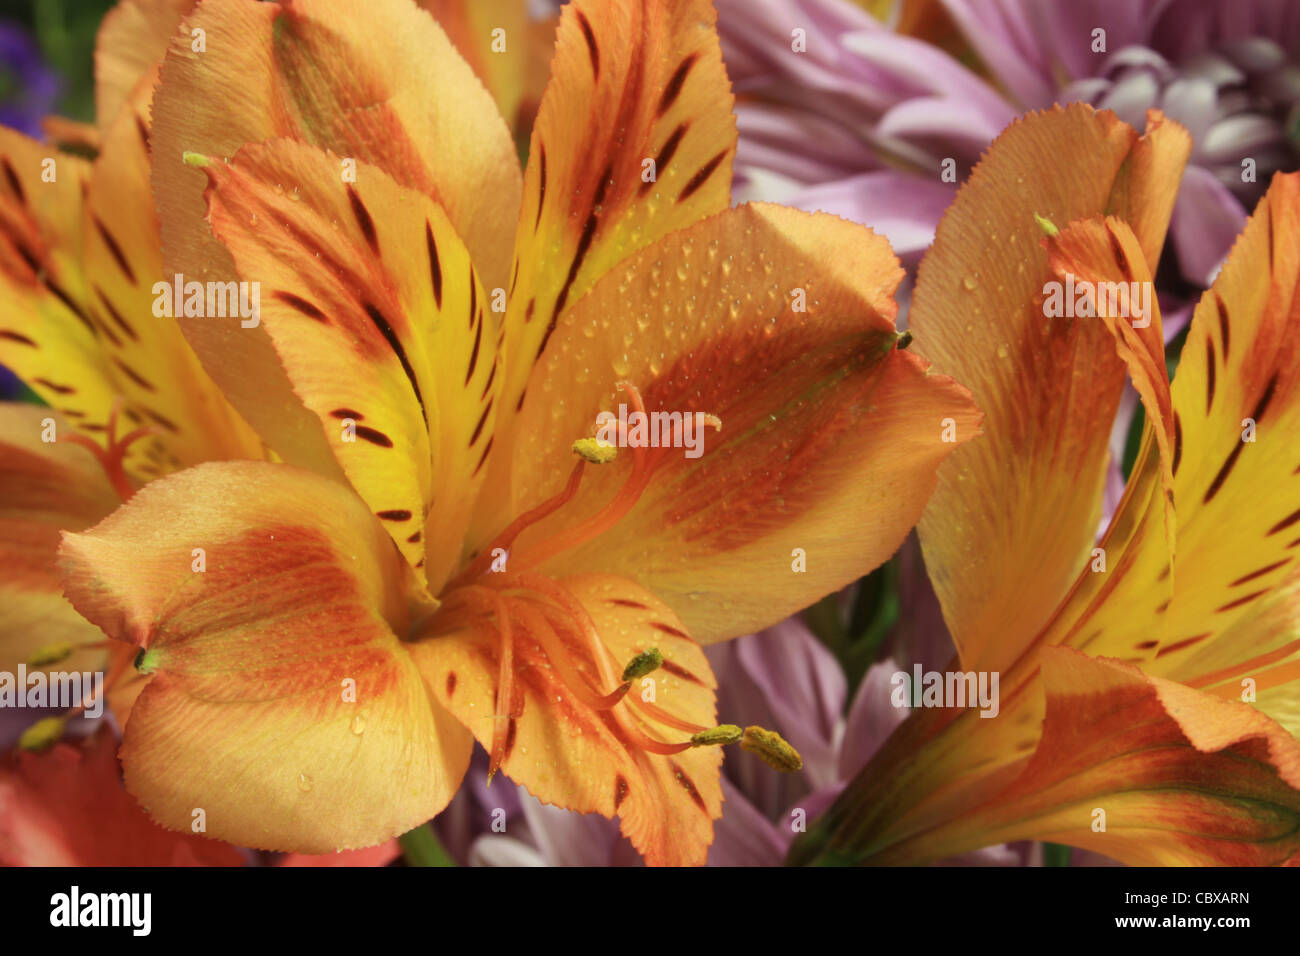 Dettaglio del salmone e giallo o alstroemeria alstremeria fiori in un bouquet di fiori di lavanda dietro Foto Stock